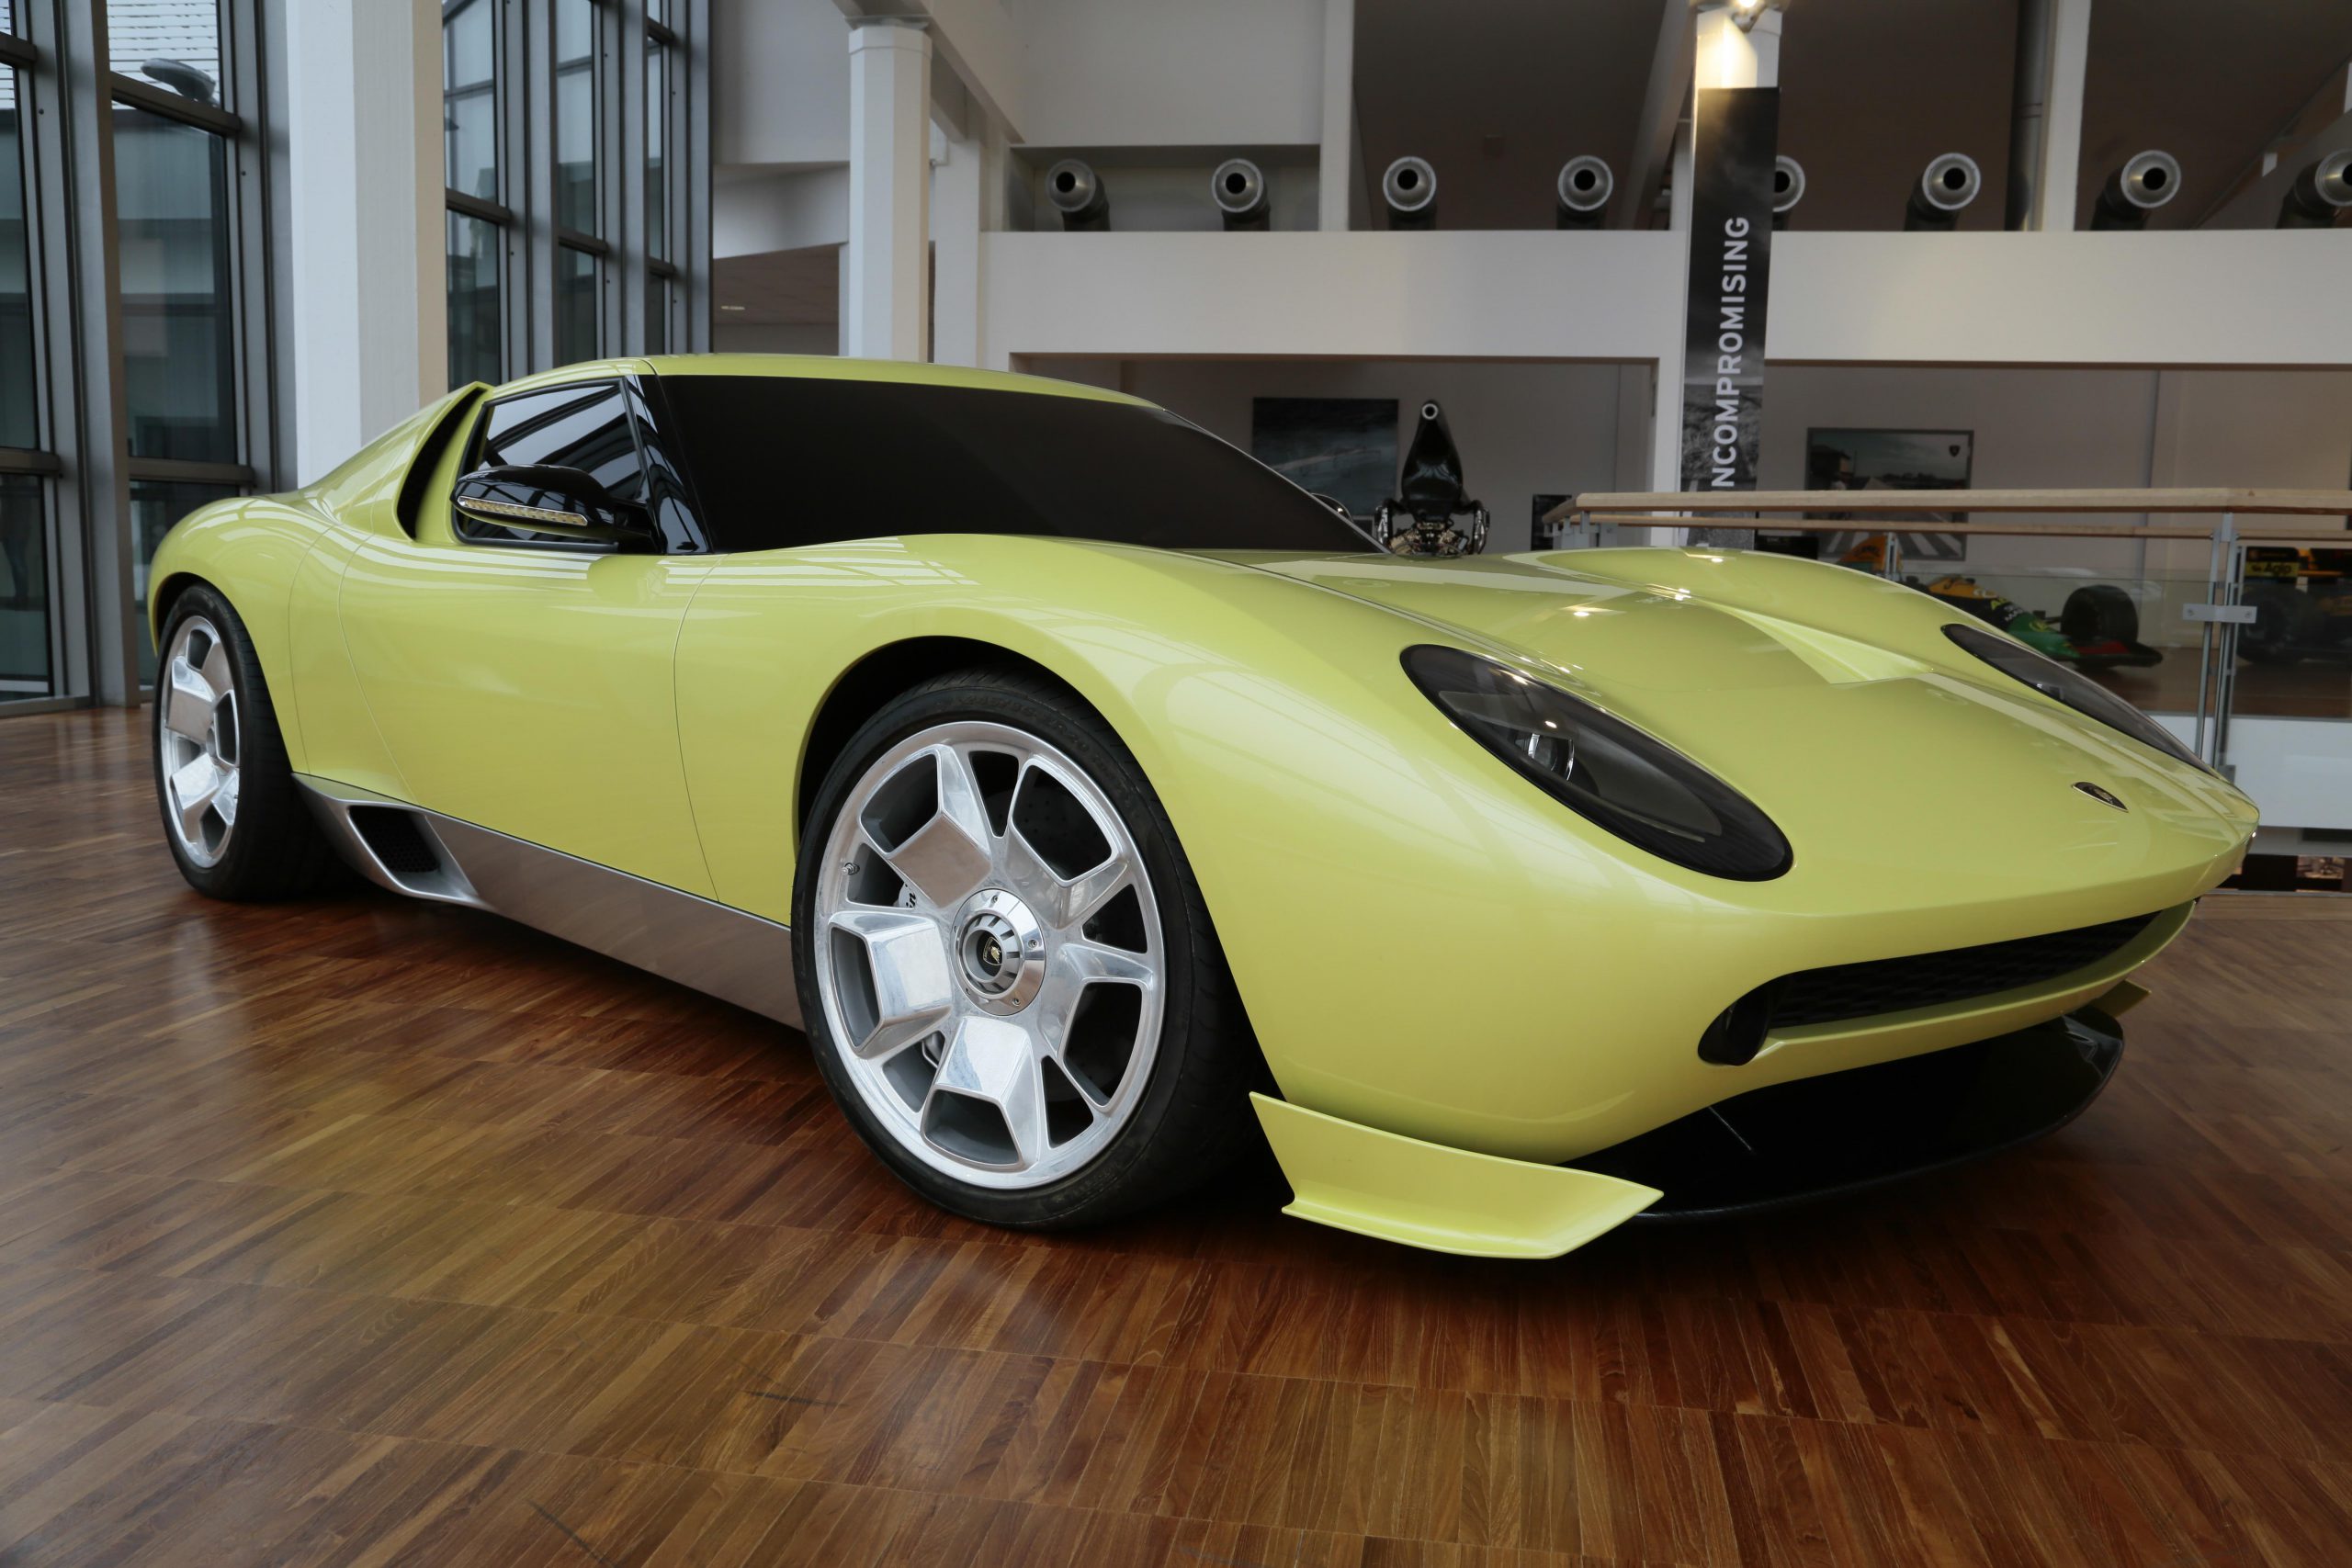 60 năm Automobili Lamborghini: Những mẫu xe theo dòng thời gian (Phần 1)